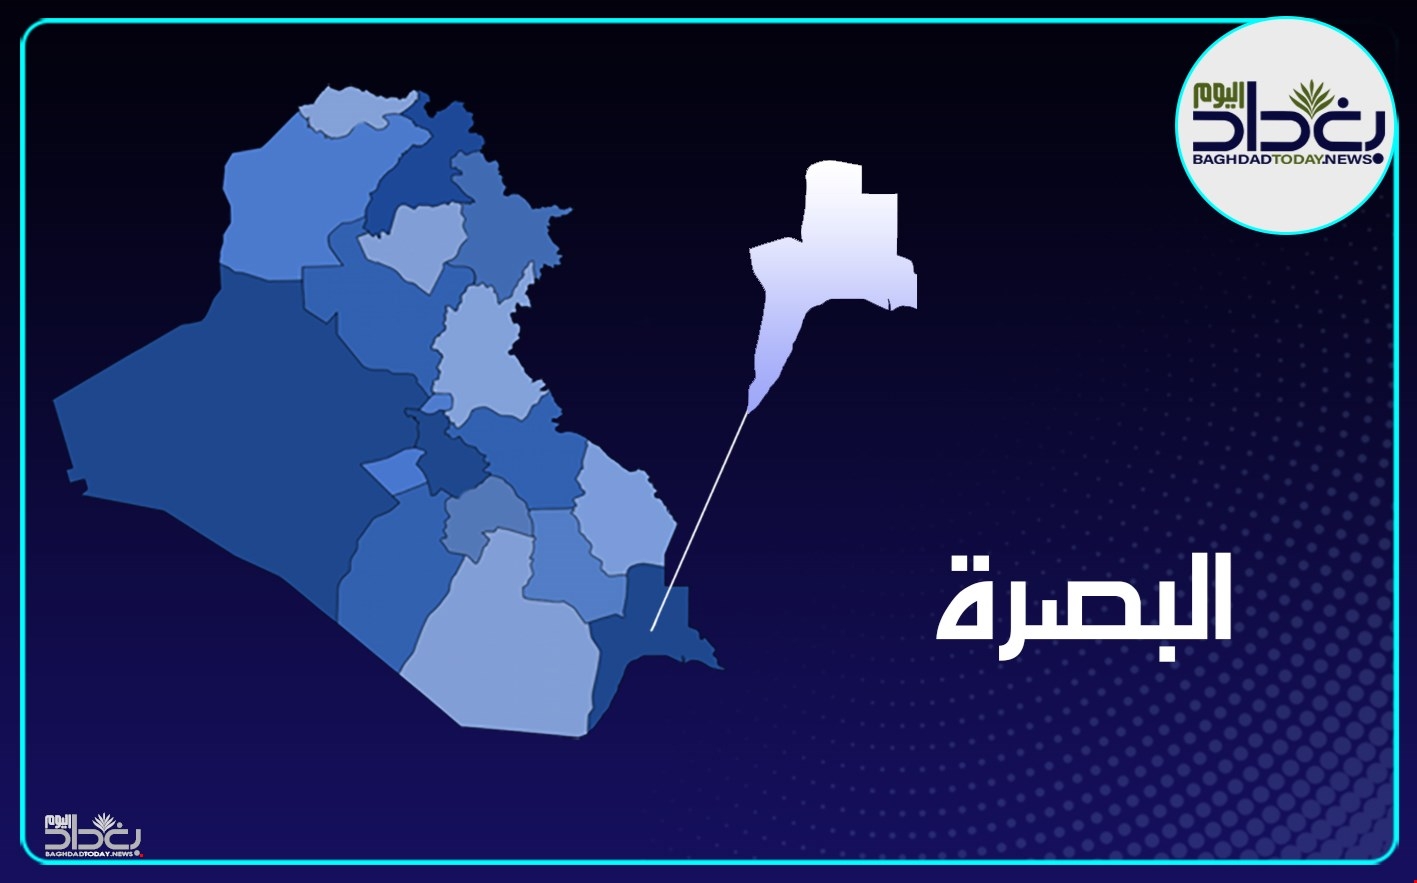 مجلس محافظة البصرة يعطل الدوام الرسمي يوم الإثنين المقبل